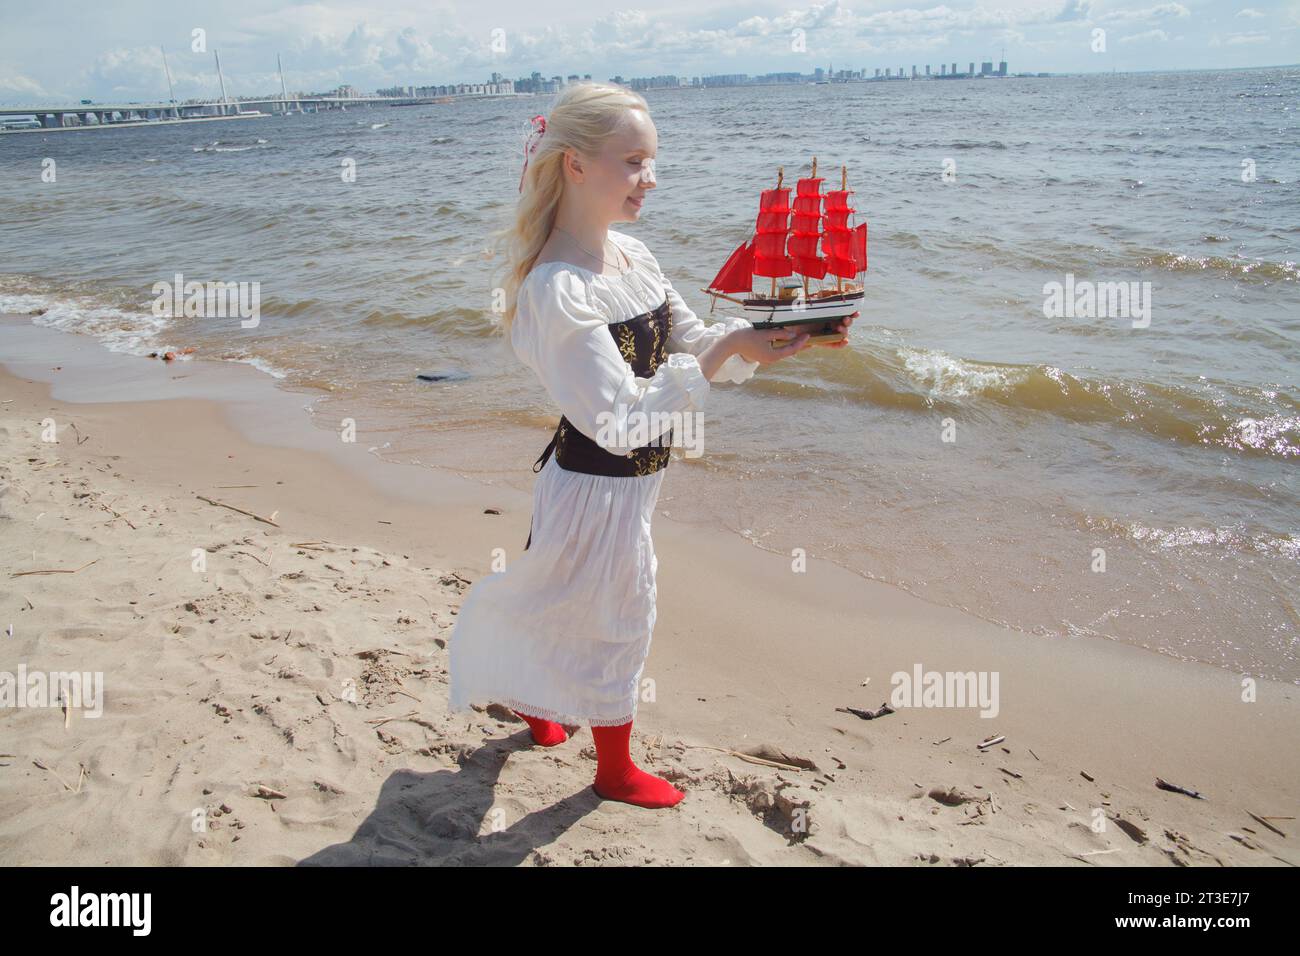 Giovane donna adulta tenera che regge un piccolo yacht con vele rosse sul mare Foto Stock